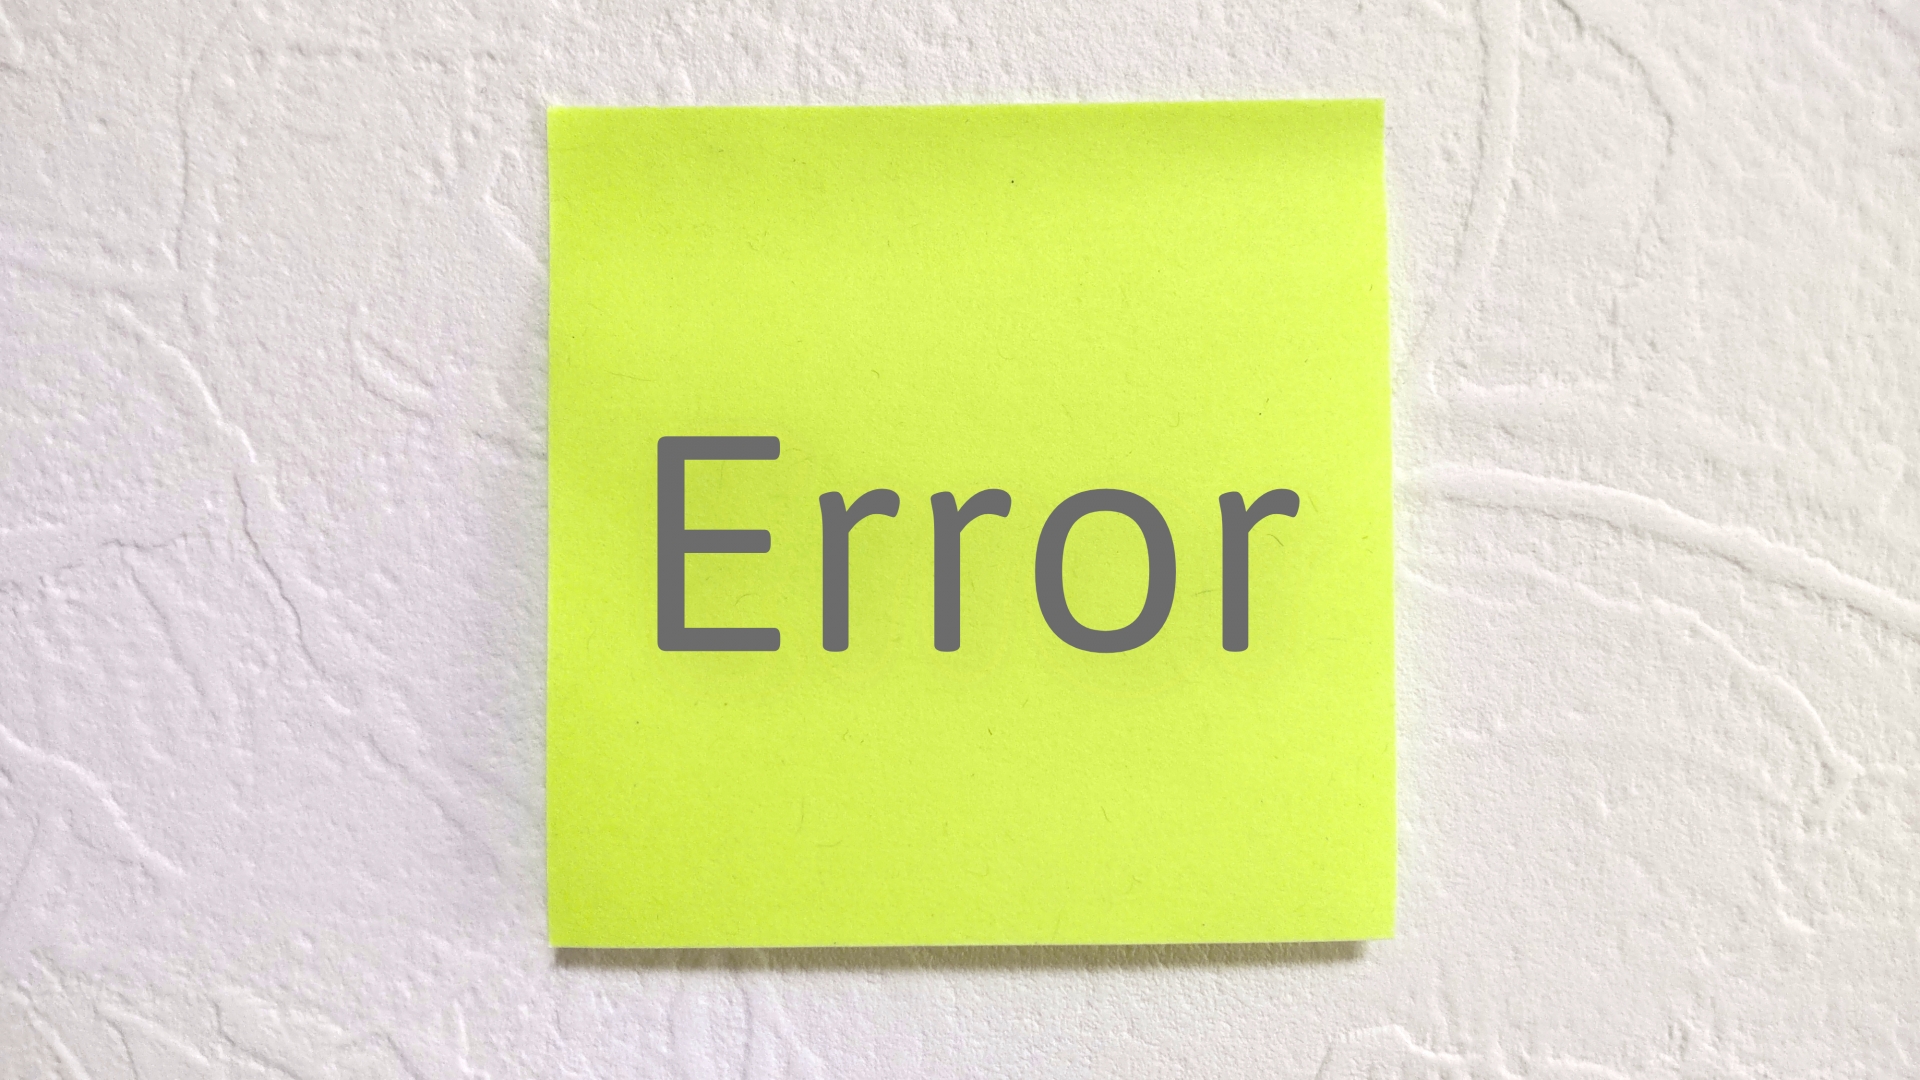 付箋紙に書かれた「Error」という文字